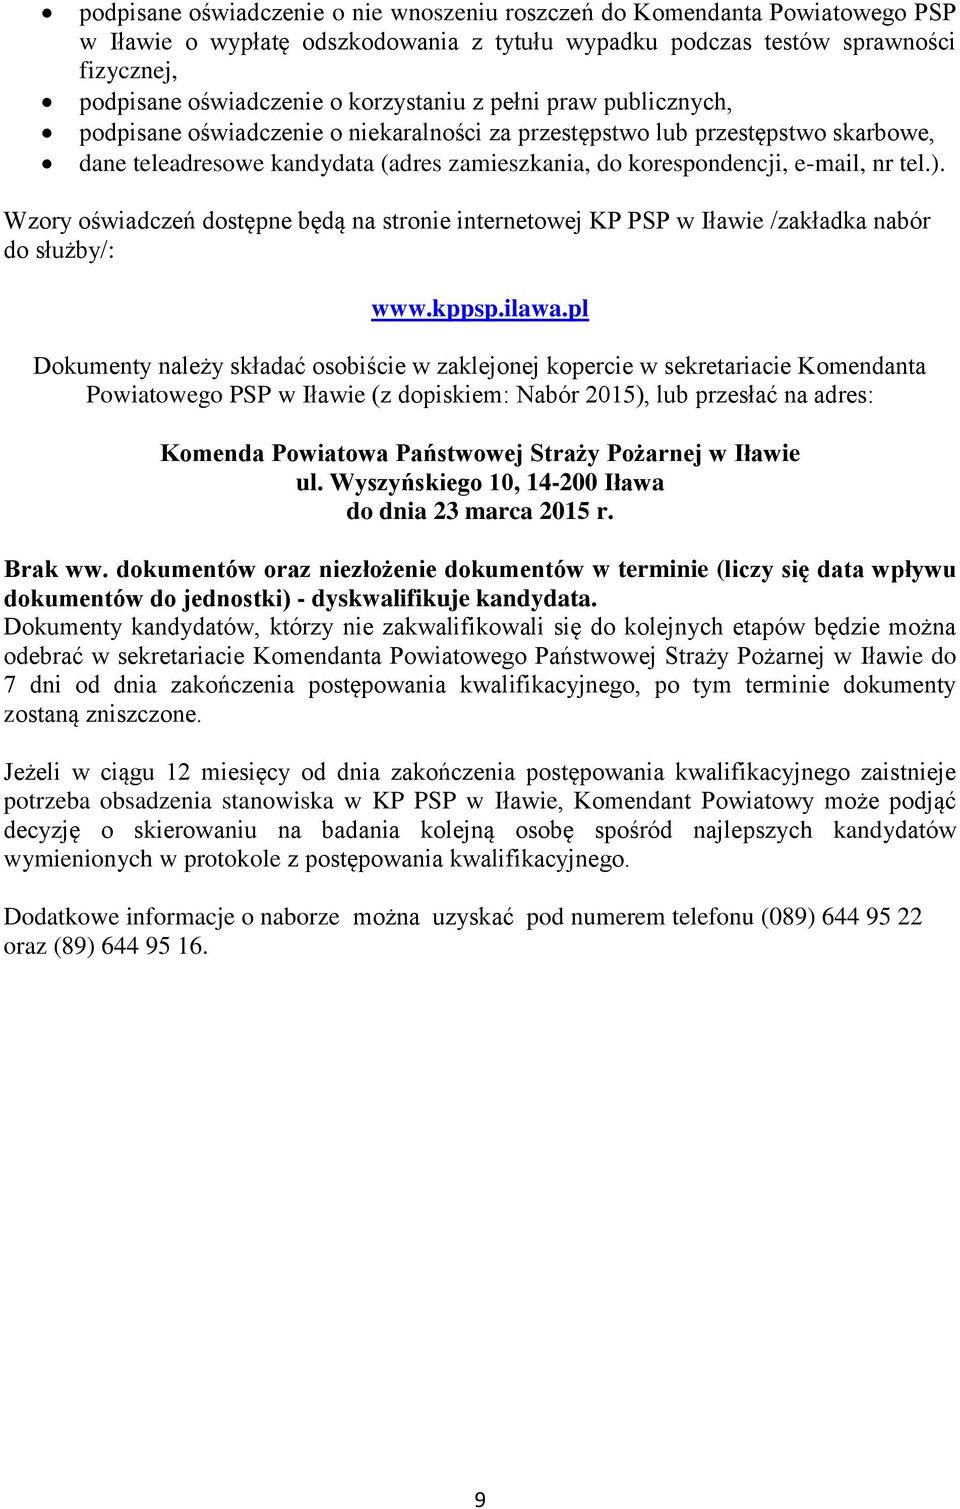 tel.). Wzory oświadczeń dostępne będą na stronie internetowej KP PSP w Iławie /zakładka nabór do służby/: www.kppsp.ilawa.